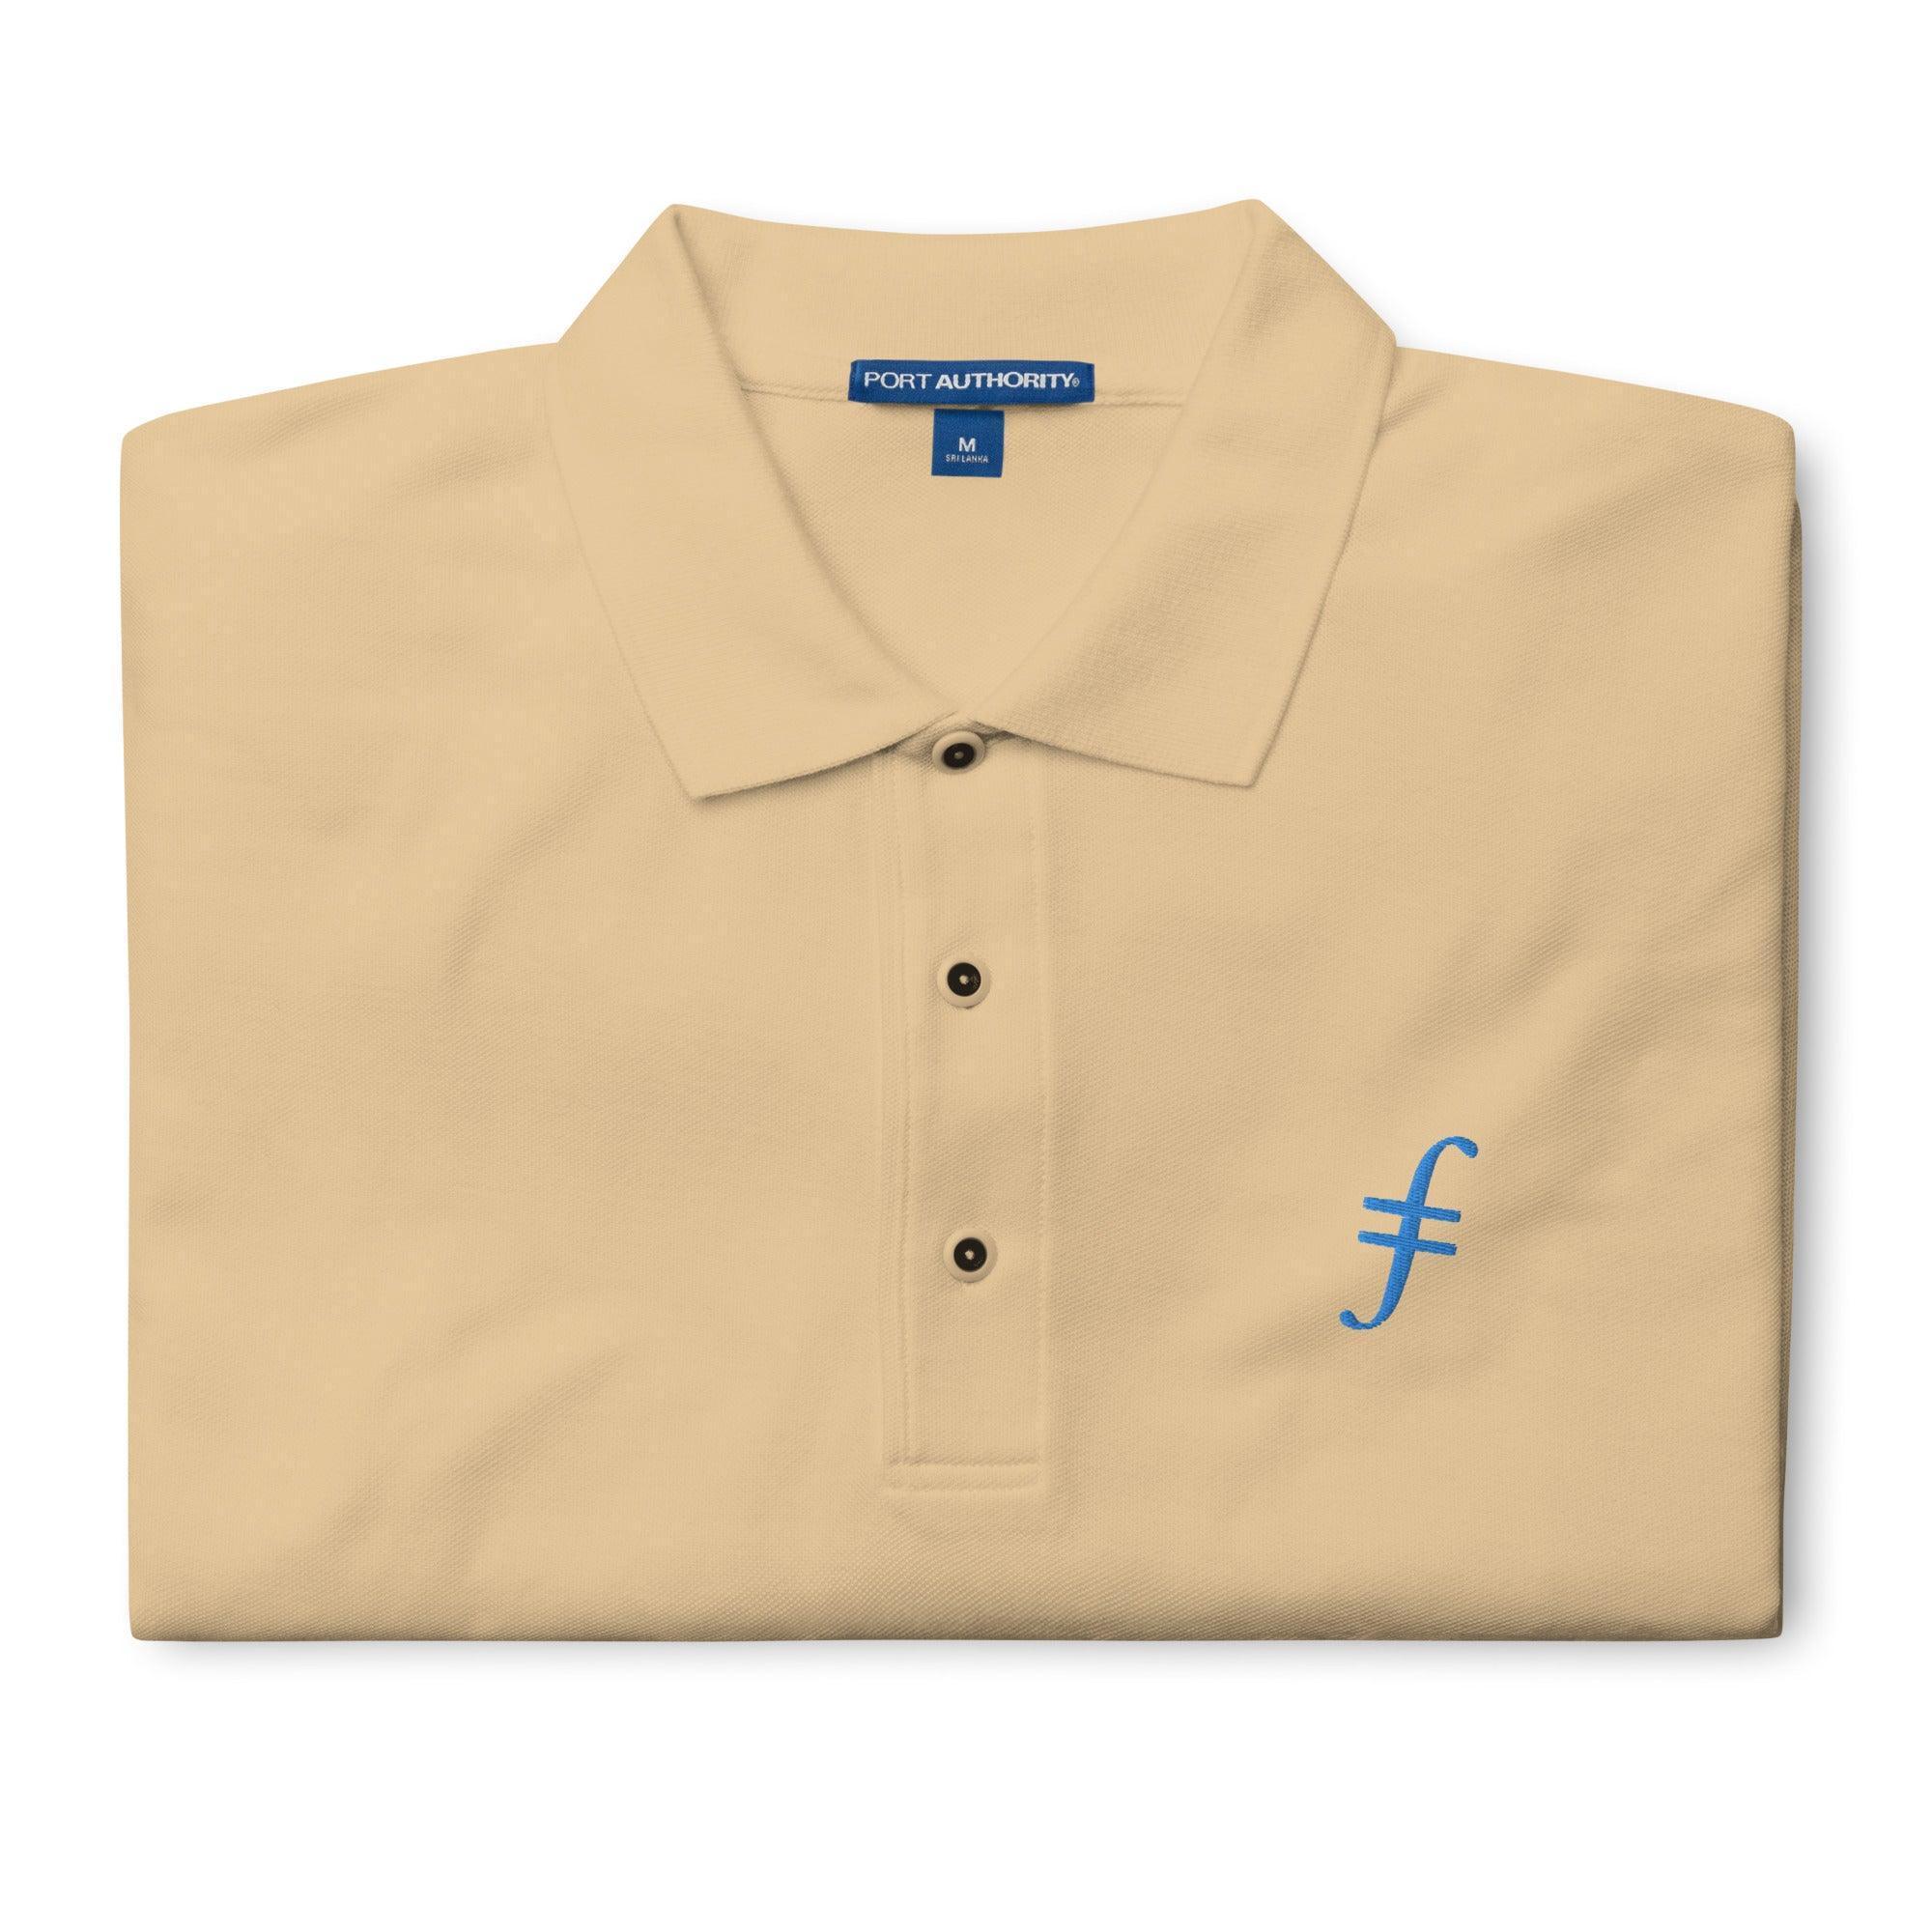 Filecoin Polo Shirt - InvestmenTees